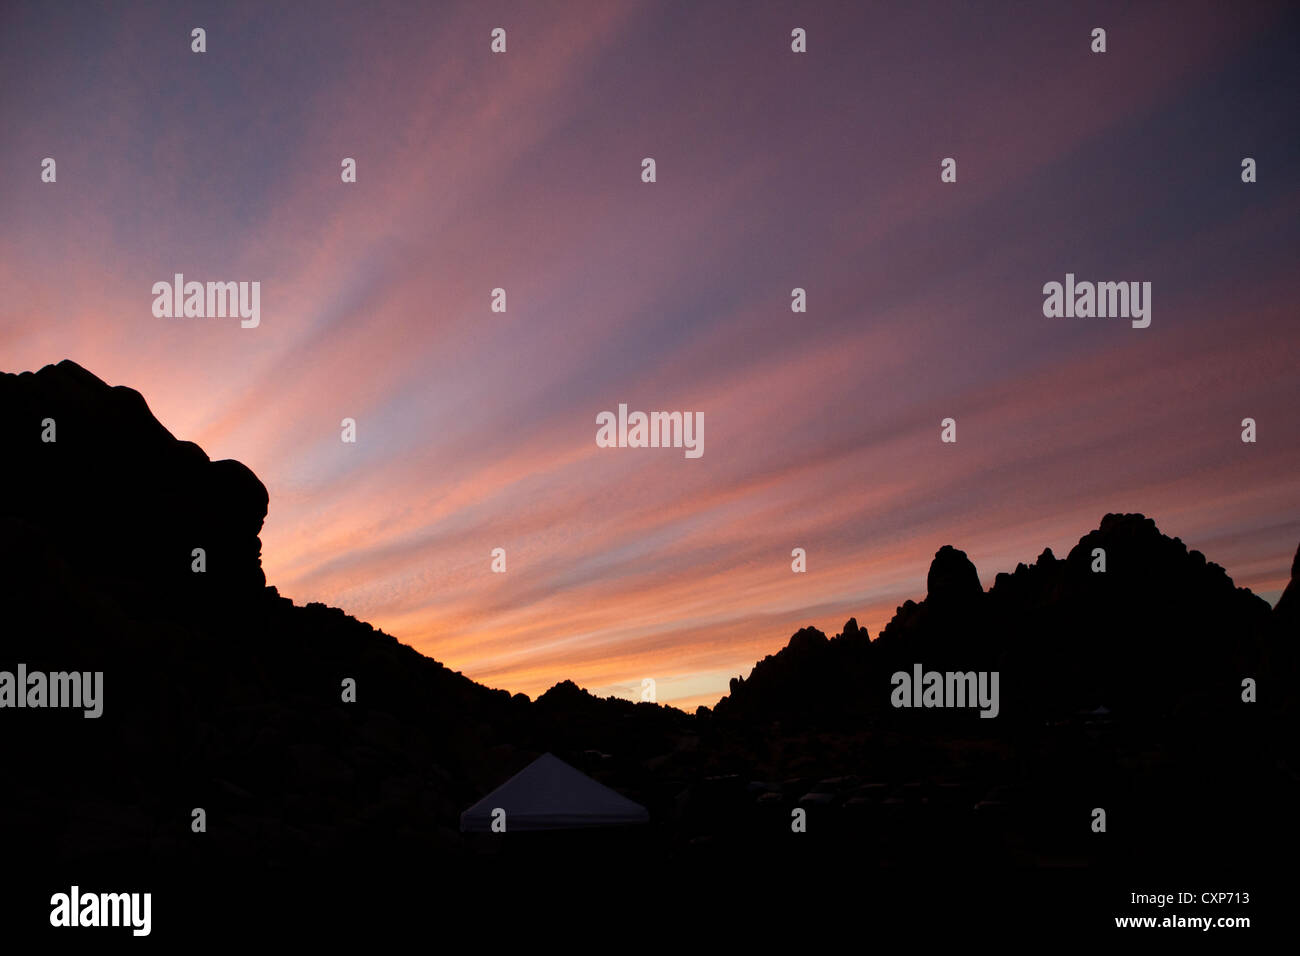 dramatischen Sonnenuntergang in der Wüste mit Silhouette der Felsen und Berge. Stockfoto